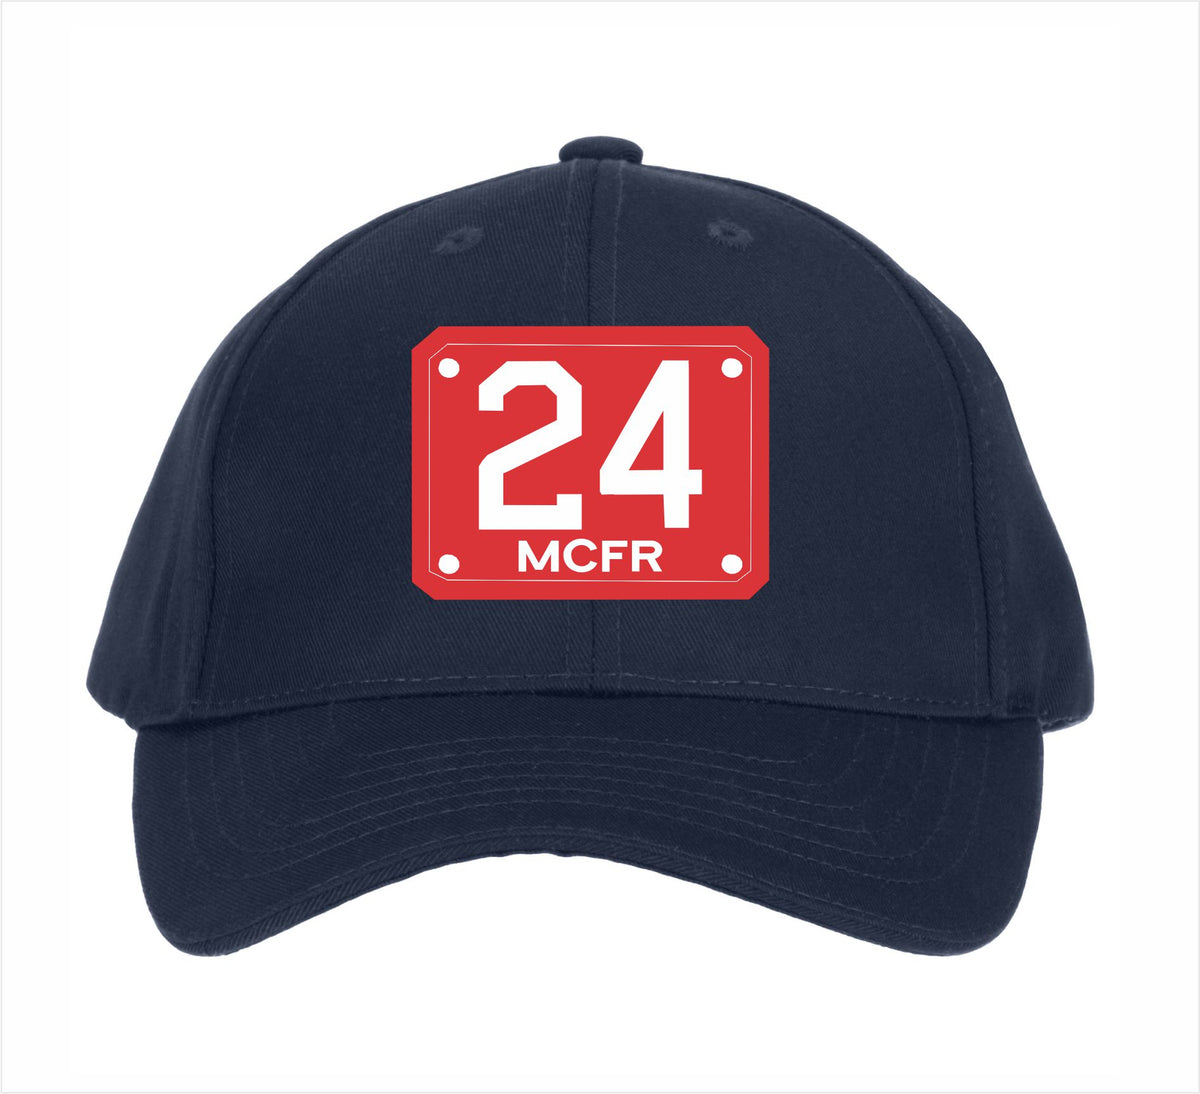 MCFR 24 Custom Embroidered Hat Design